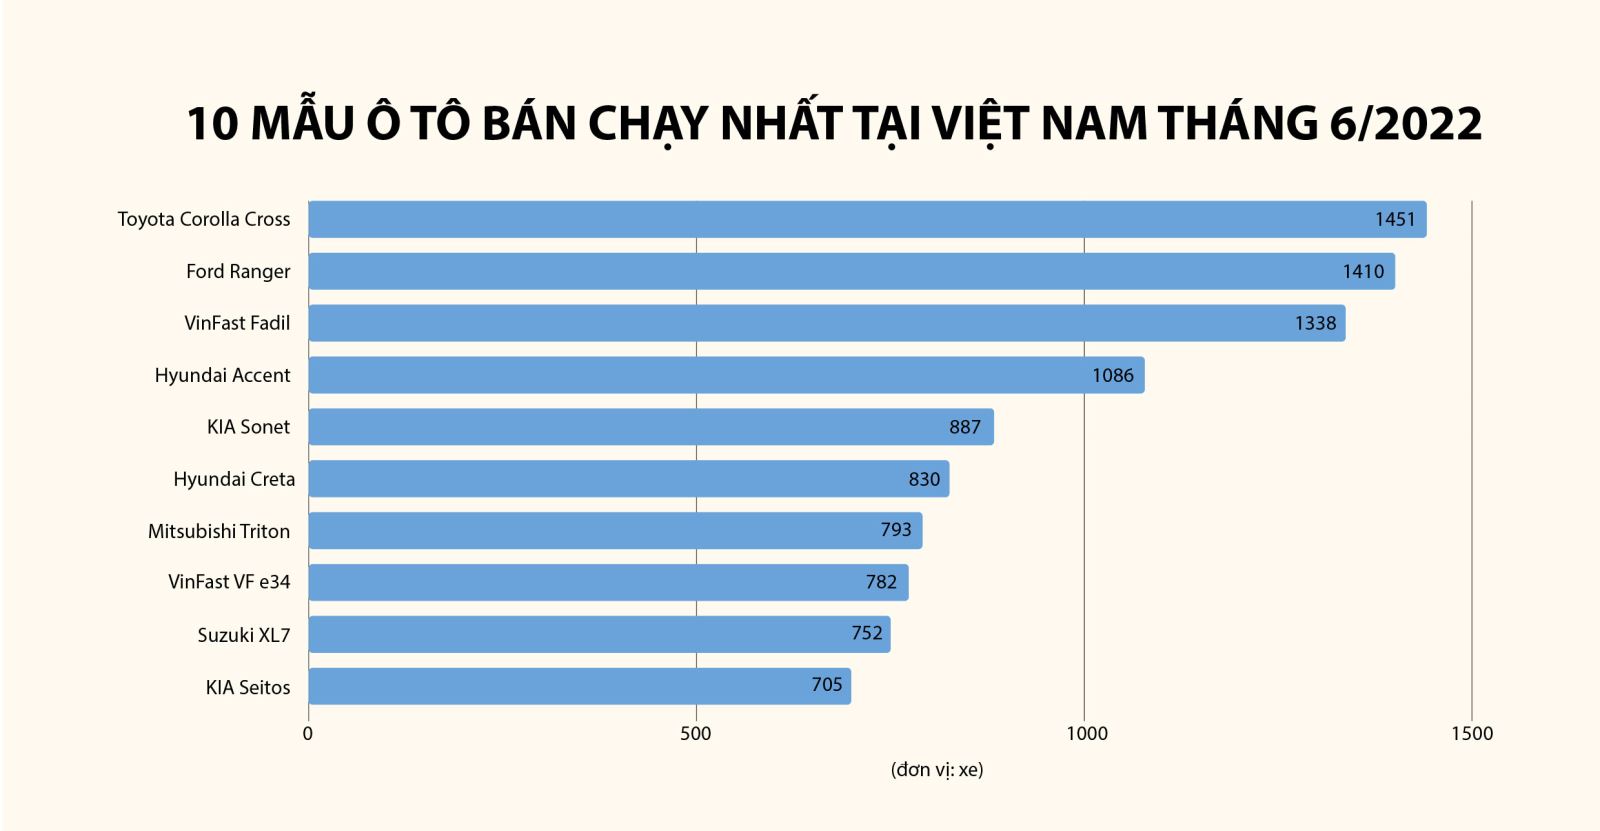 Top 10 mẫu xe bán chạy nhất tại Việt Nam tháng 6/2022.